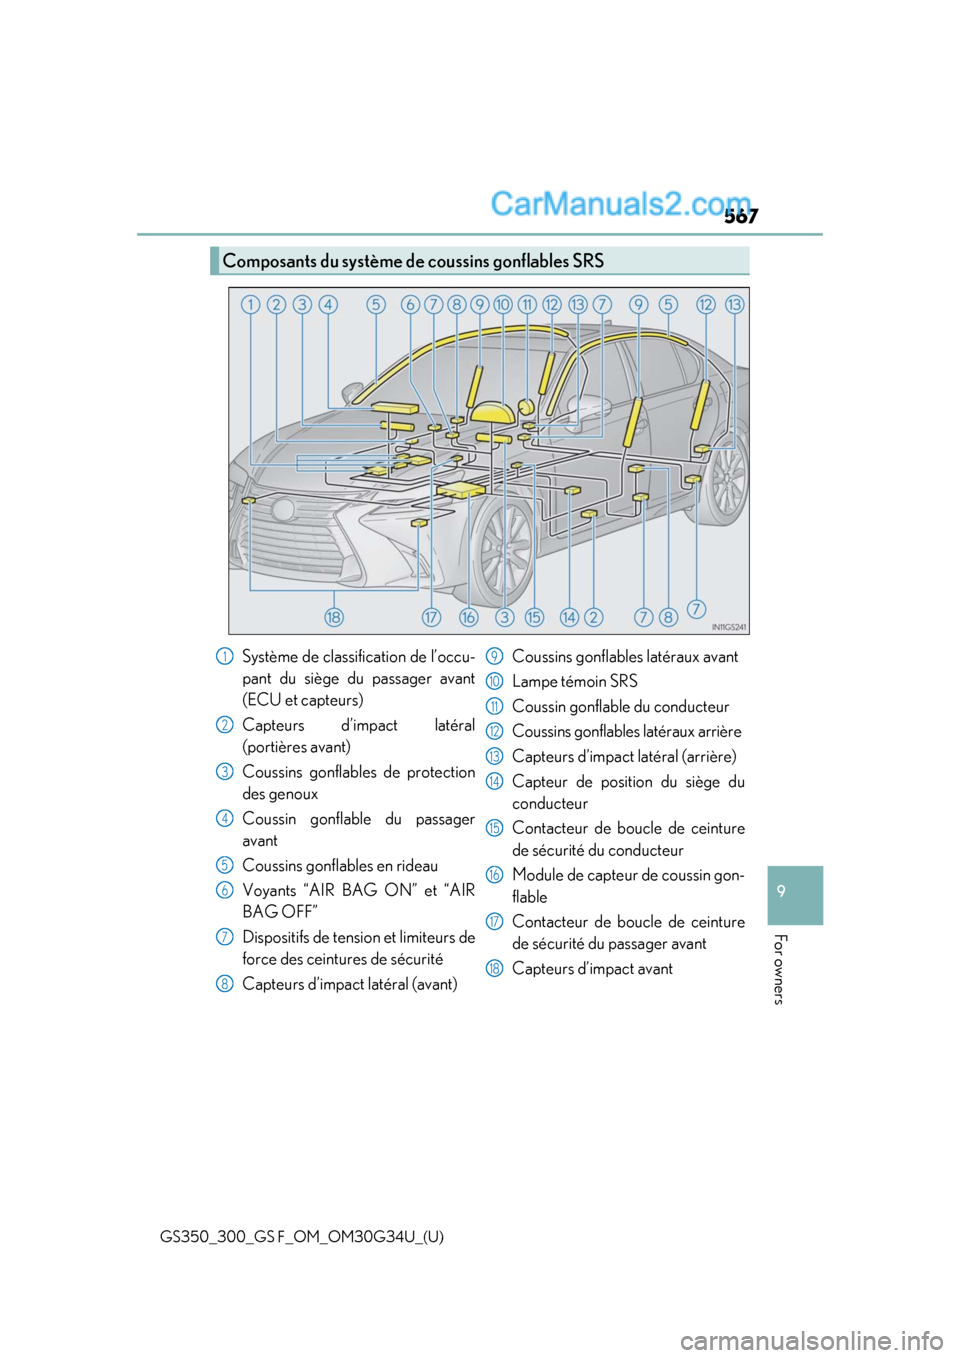 Lexus GS300 2018  Owners Manuals GS350_300_GS F_OM_OM30G34U_(U)
567
9
For owners
Composants du système de coussins gonflables SRS
Système de classification de l’occu-
pant du siège du passager avant
(ECU et capteurs)
Capteurs d�